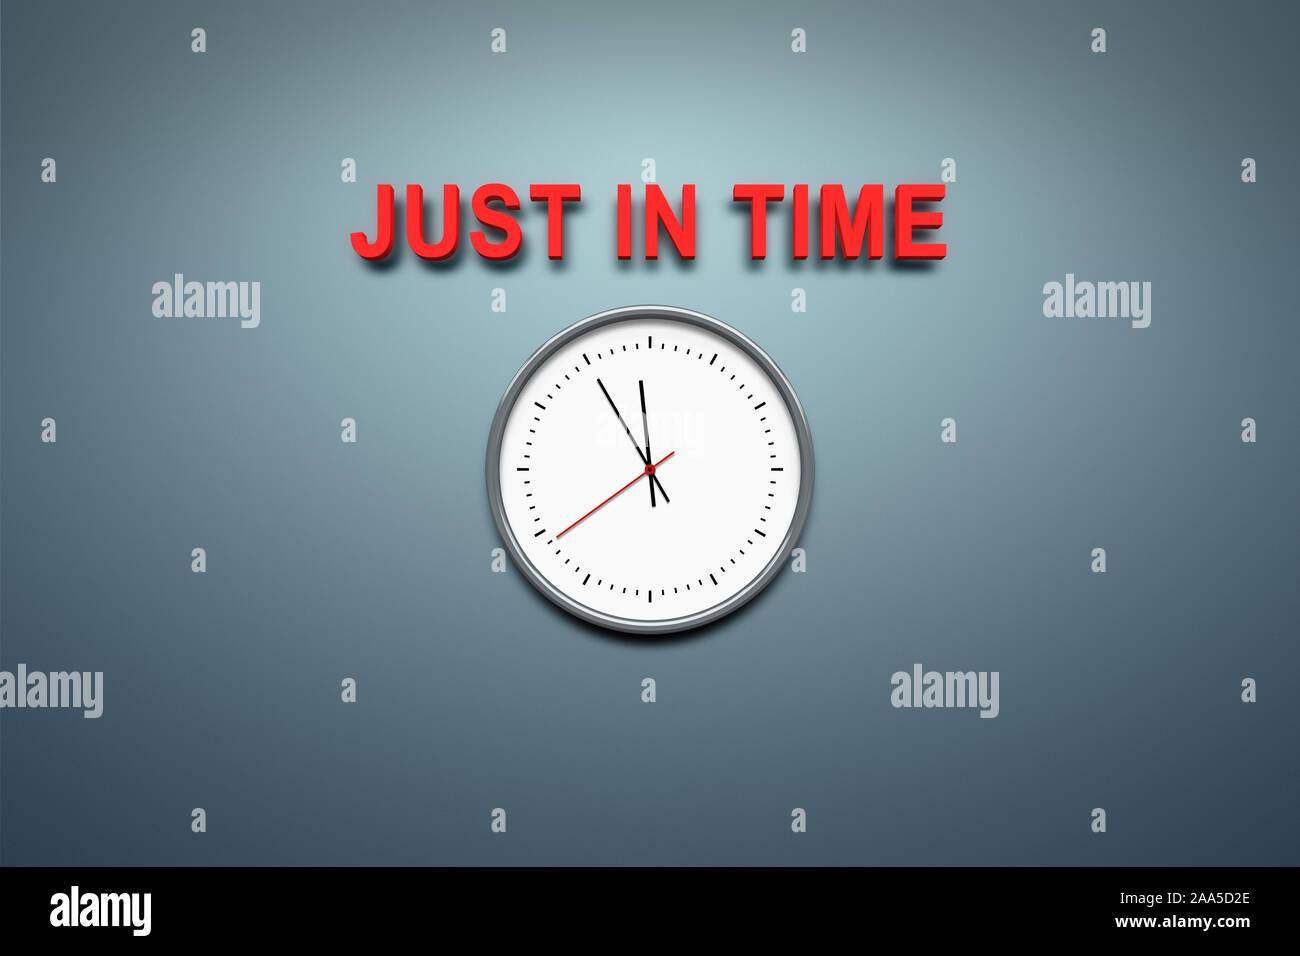 Eine simple Uhr vor grauem Hintergrund, ueber der die Worte 'Just in Time' stehen Stock Photo